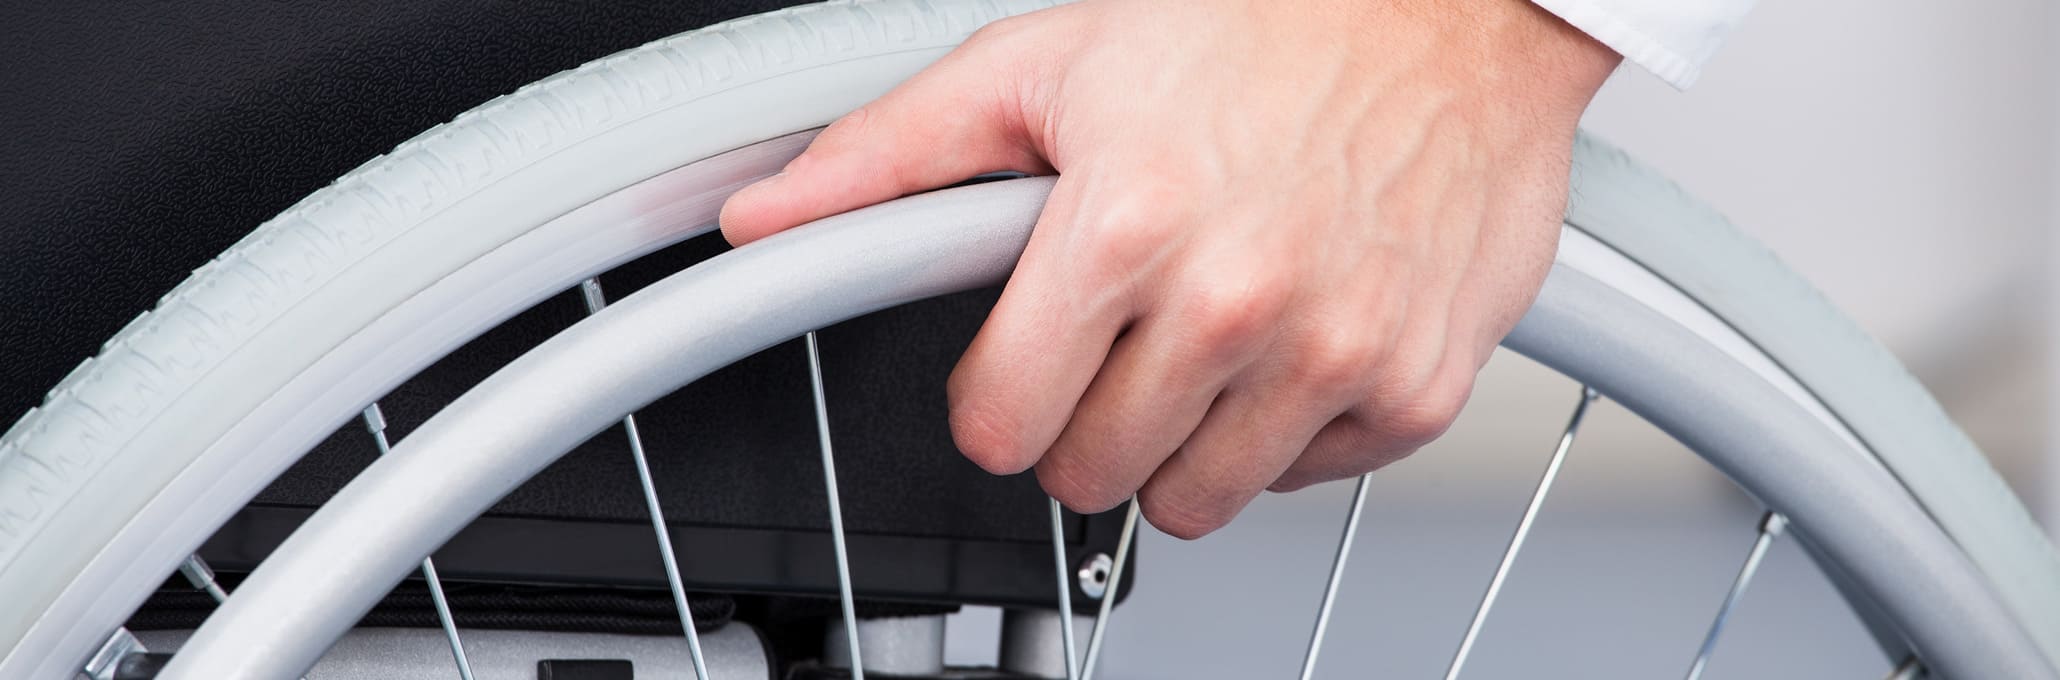 Main sur une roue de fauteuil roulant